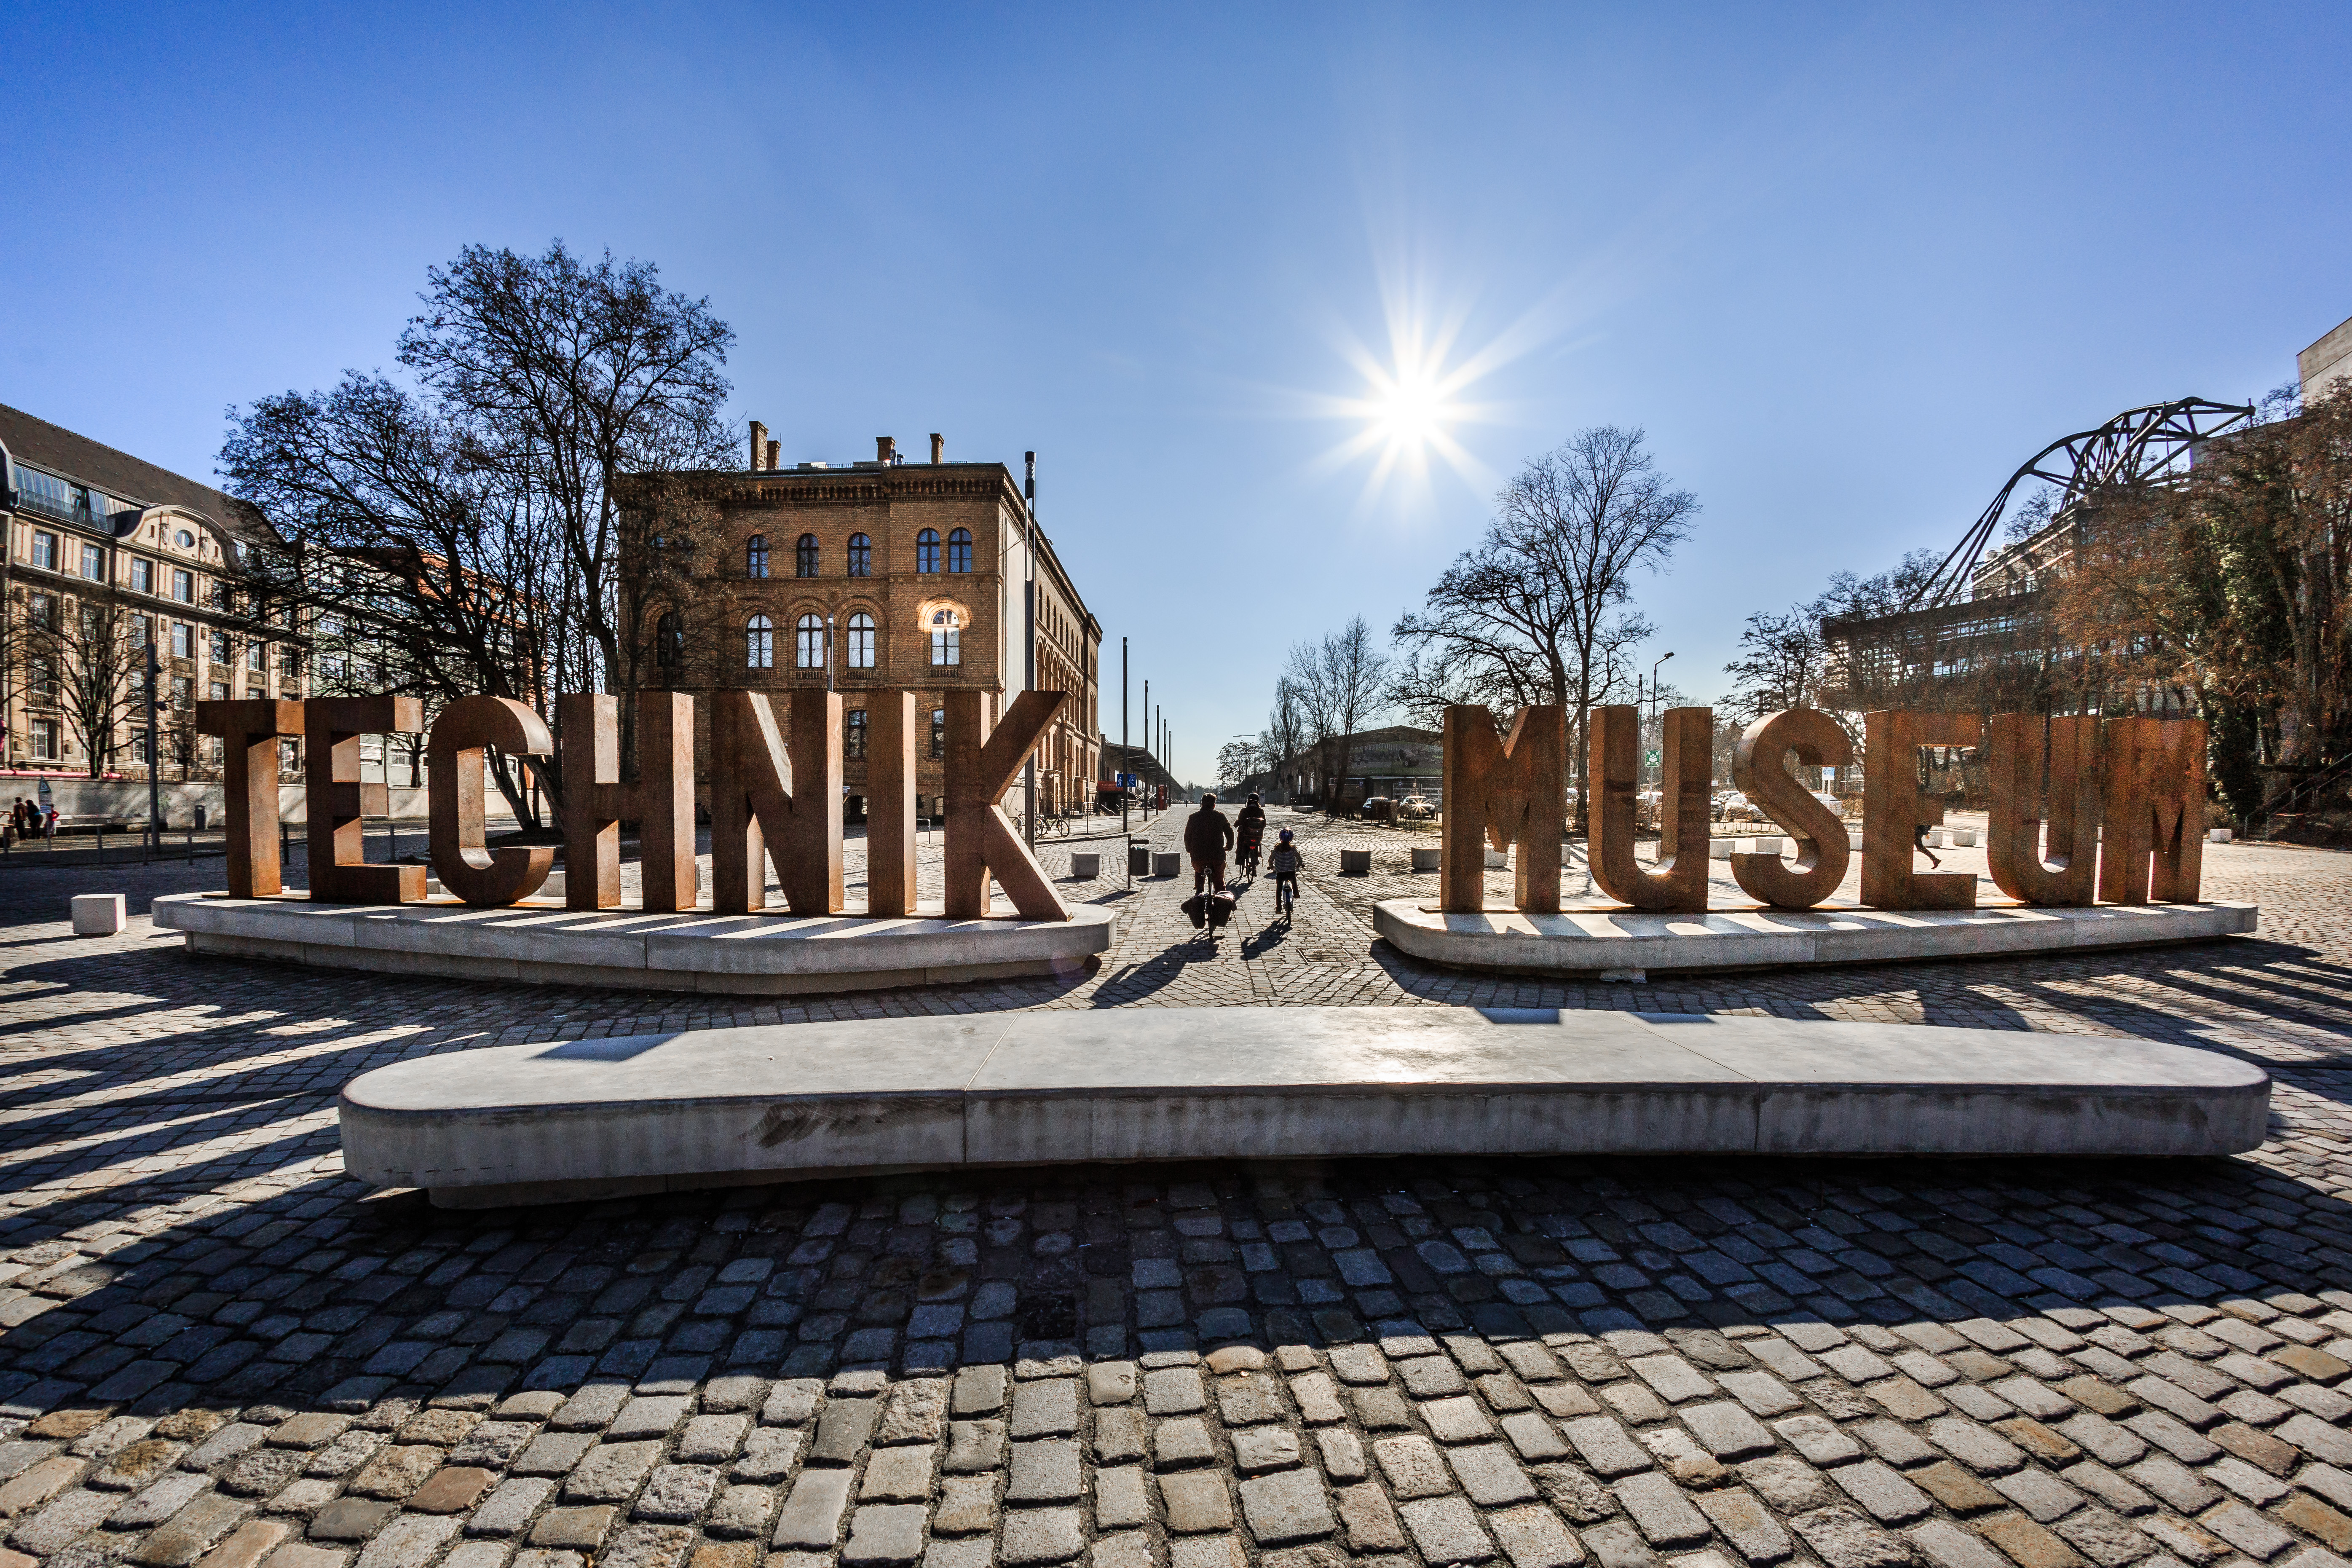 Auf einem gepflasterten Platz sieht man eine aus Metallbuchstaben erstellte Wortskulptur, die sich „Technik Museum“ liest. Im Hintergrund ein Backsteingebäude.